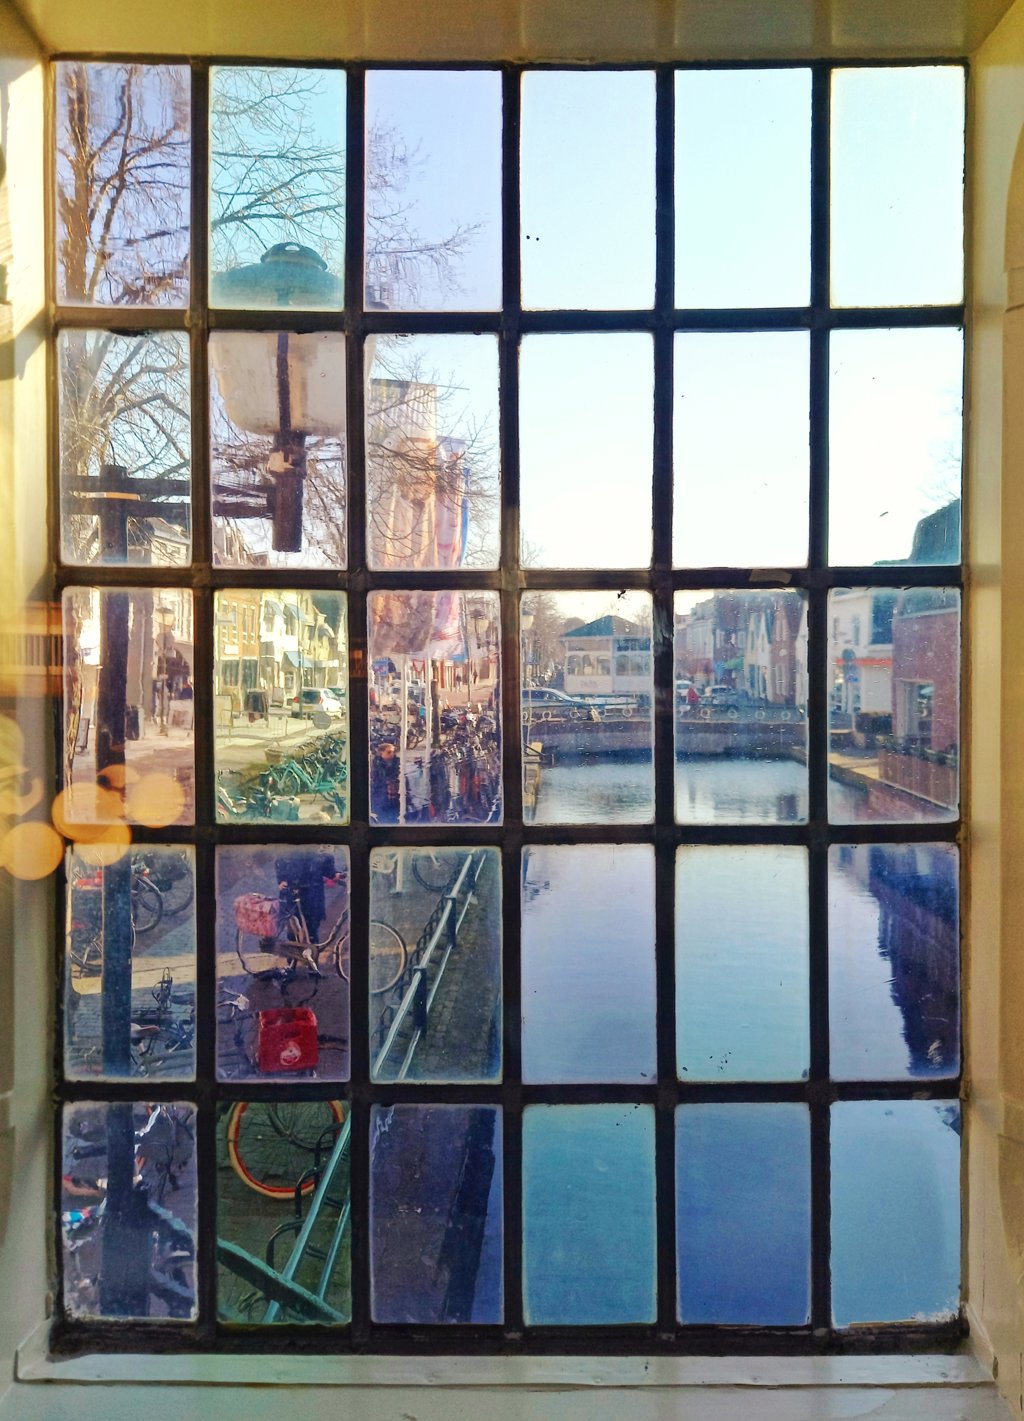 Een foto gemaakt vanuit het raam van het oude gemeentehuis in Oud Beijerland. Gemaakt door Greet Beenhakker.